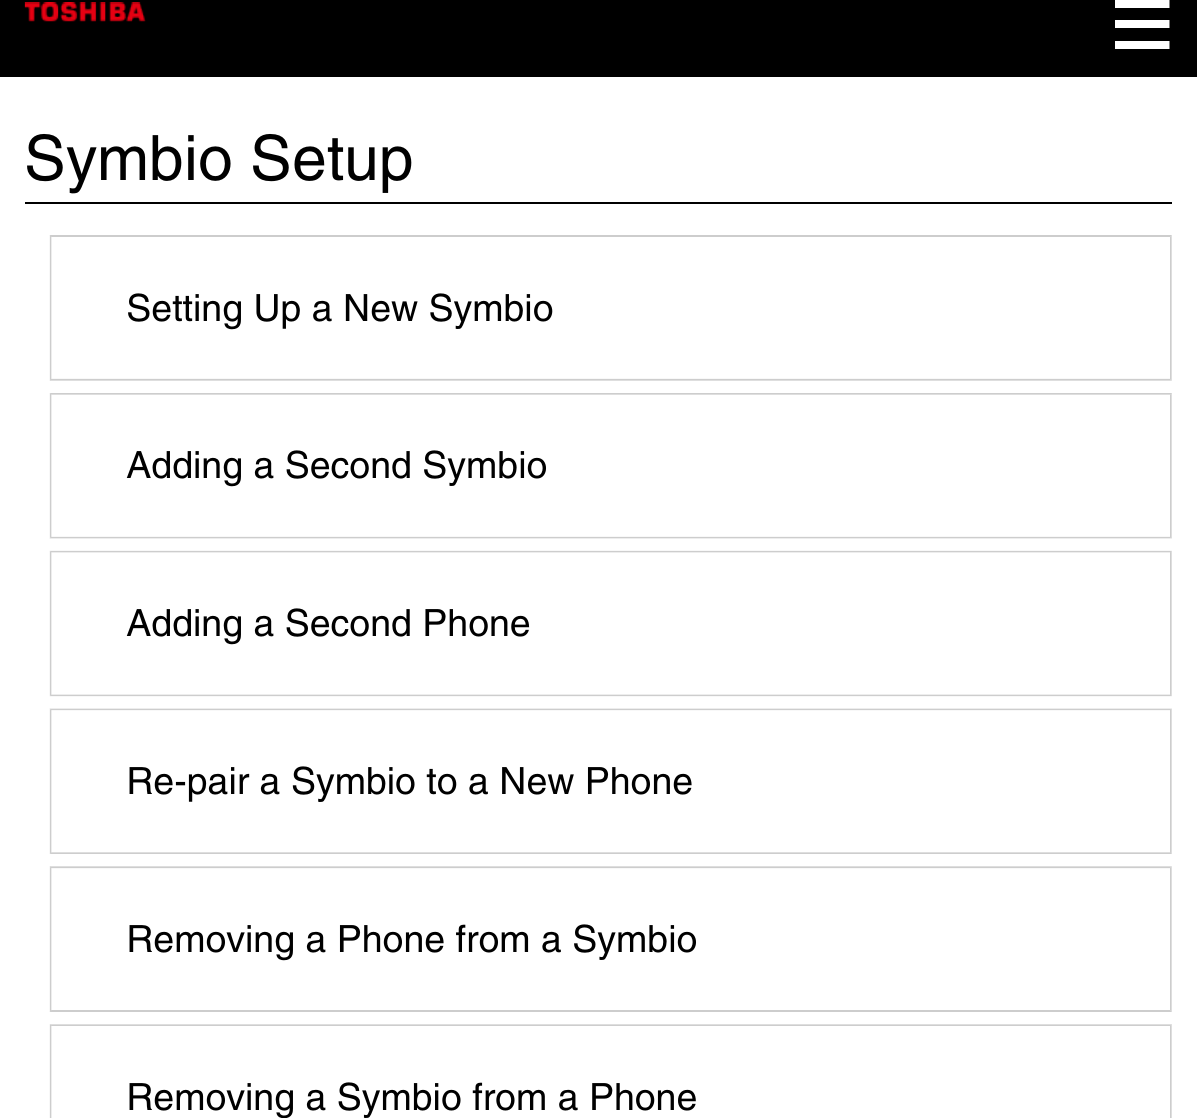 Symbio SetupSetting Up a New SymbioAdding a Second SymbioAdding a Second PhoneRe-pair a Symbio to a New PhoneRemoving a Phone from a SymbioRemoving a Symbio from a Phone